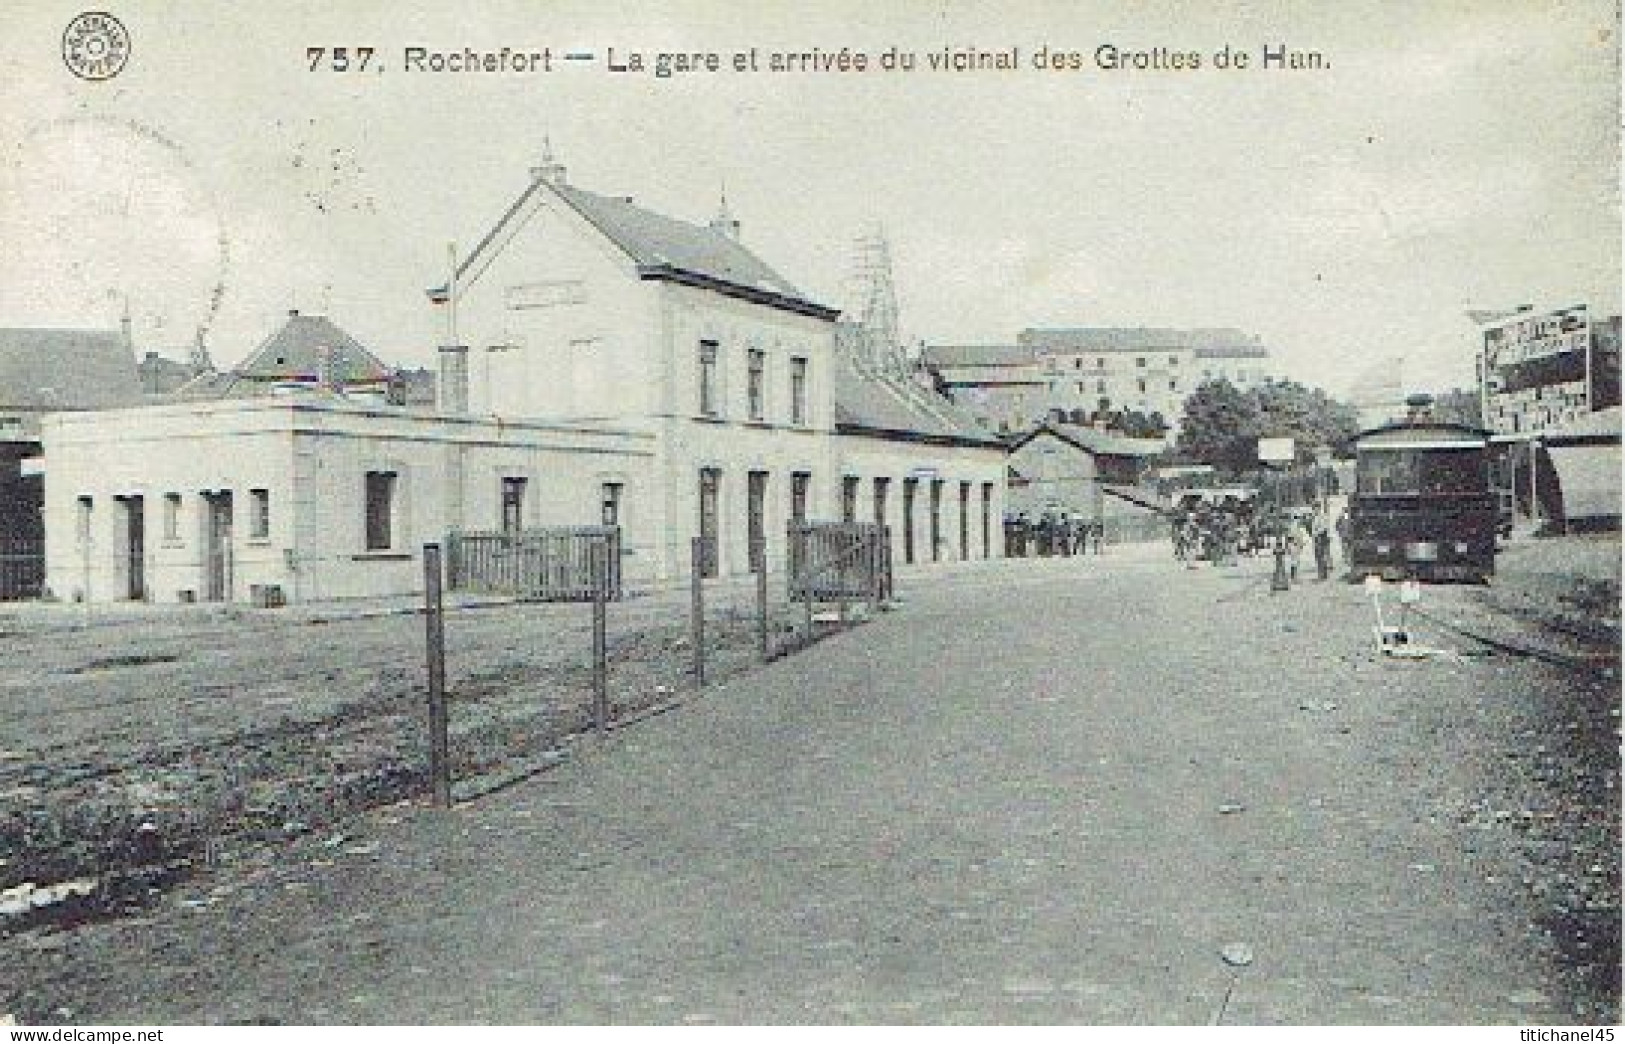 ROCHEFORT - Arrivée En Gare Du Vicinal ROCHEFORT-WELLIN - TRAM VAPEUR - STOOMTRAM - Edt. G. HERMANS ANVERS - 1913 - Rochefort